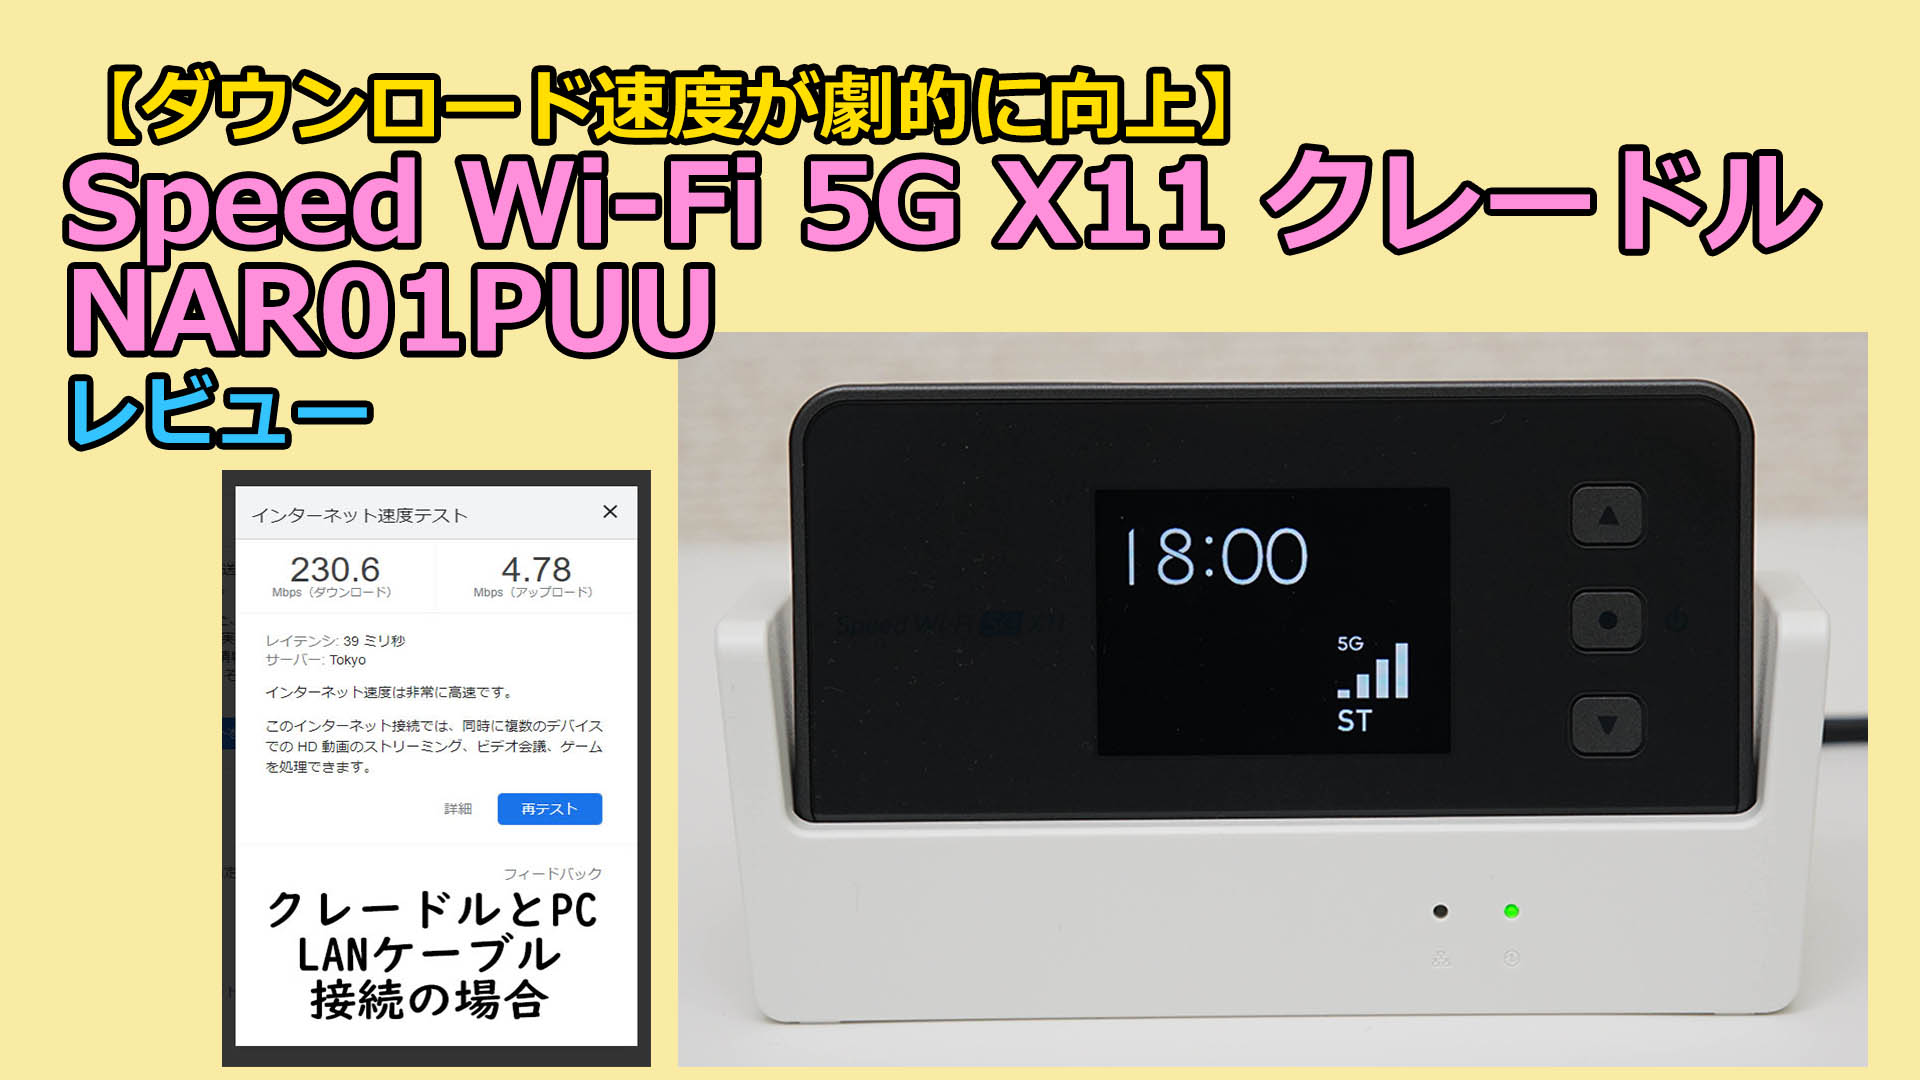 ダウンロード速度が劇的に向上】WiMAX Speed Wi-Fi 5G X11 クレードル 